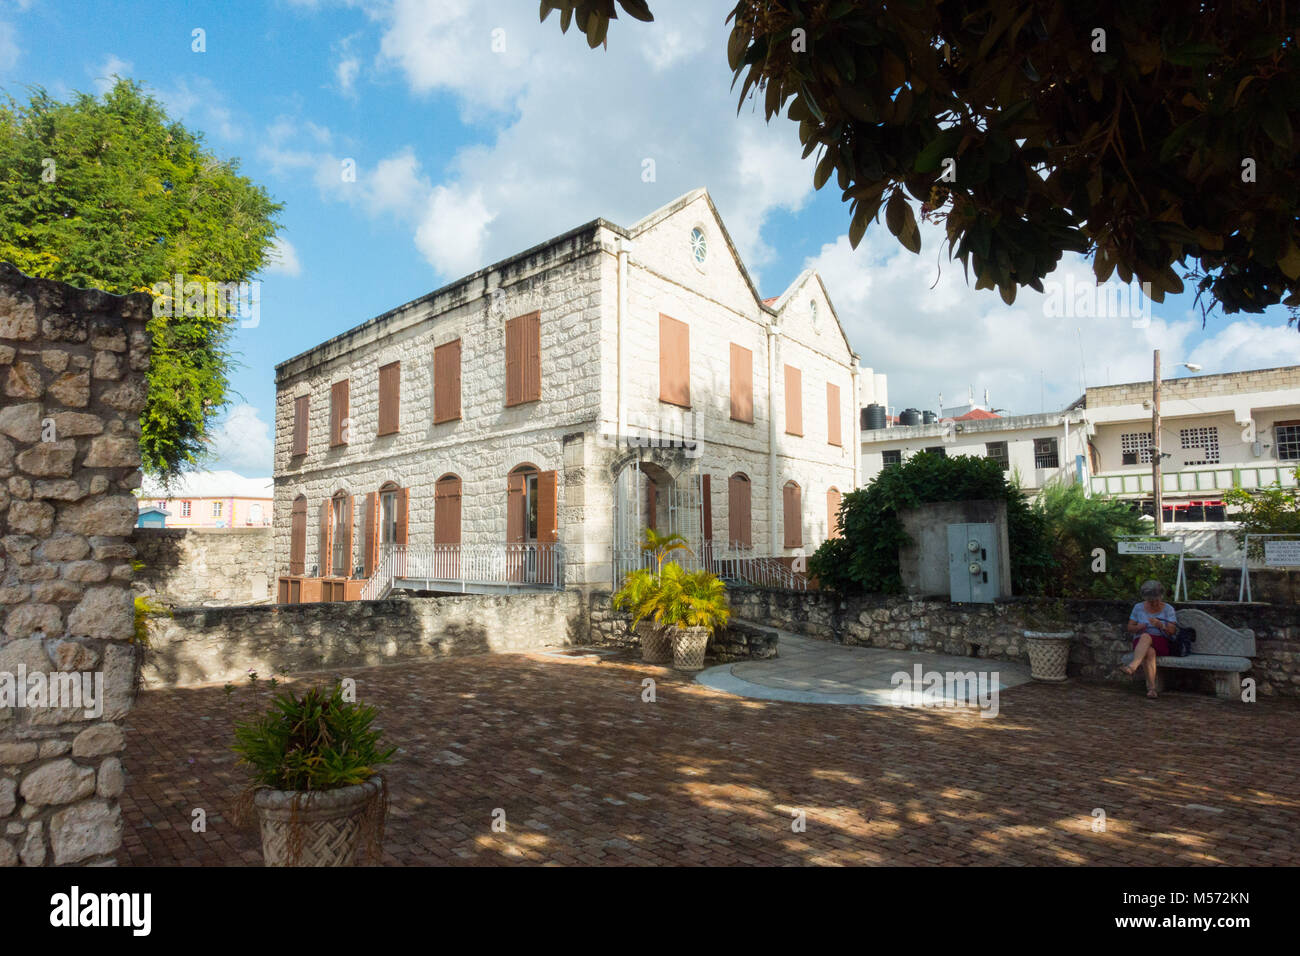 Les Nidhe Israel Synagogue musée a ouvert ses portes en 2008 à Bridgetown, Barbade Banque D'Images